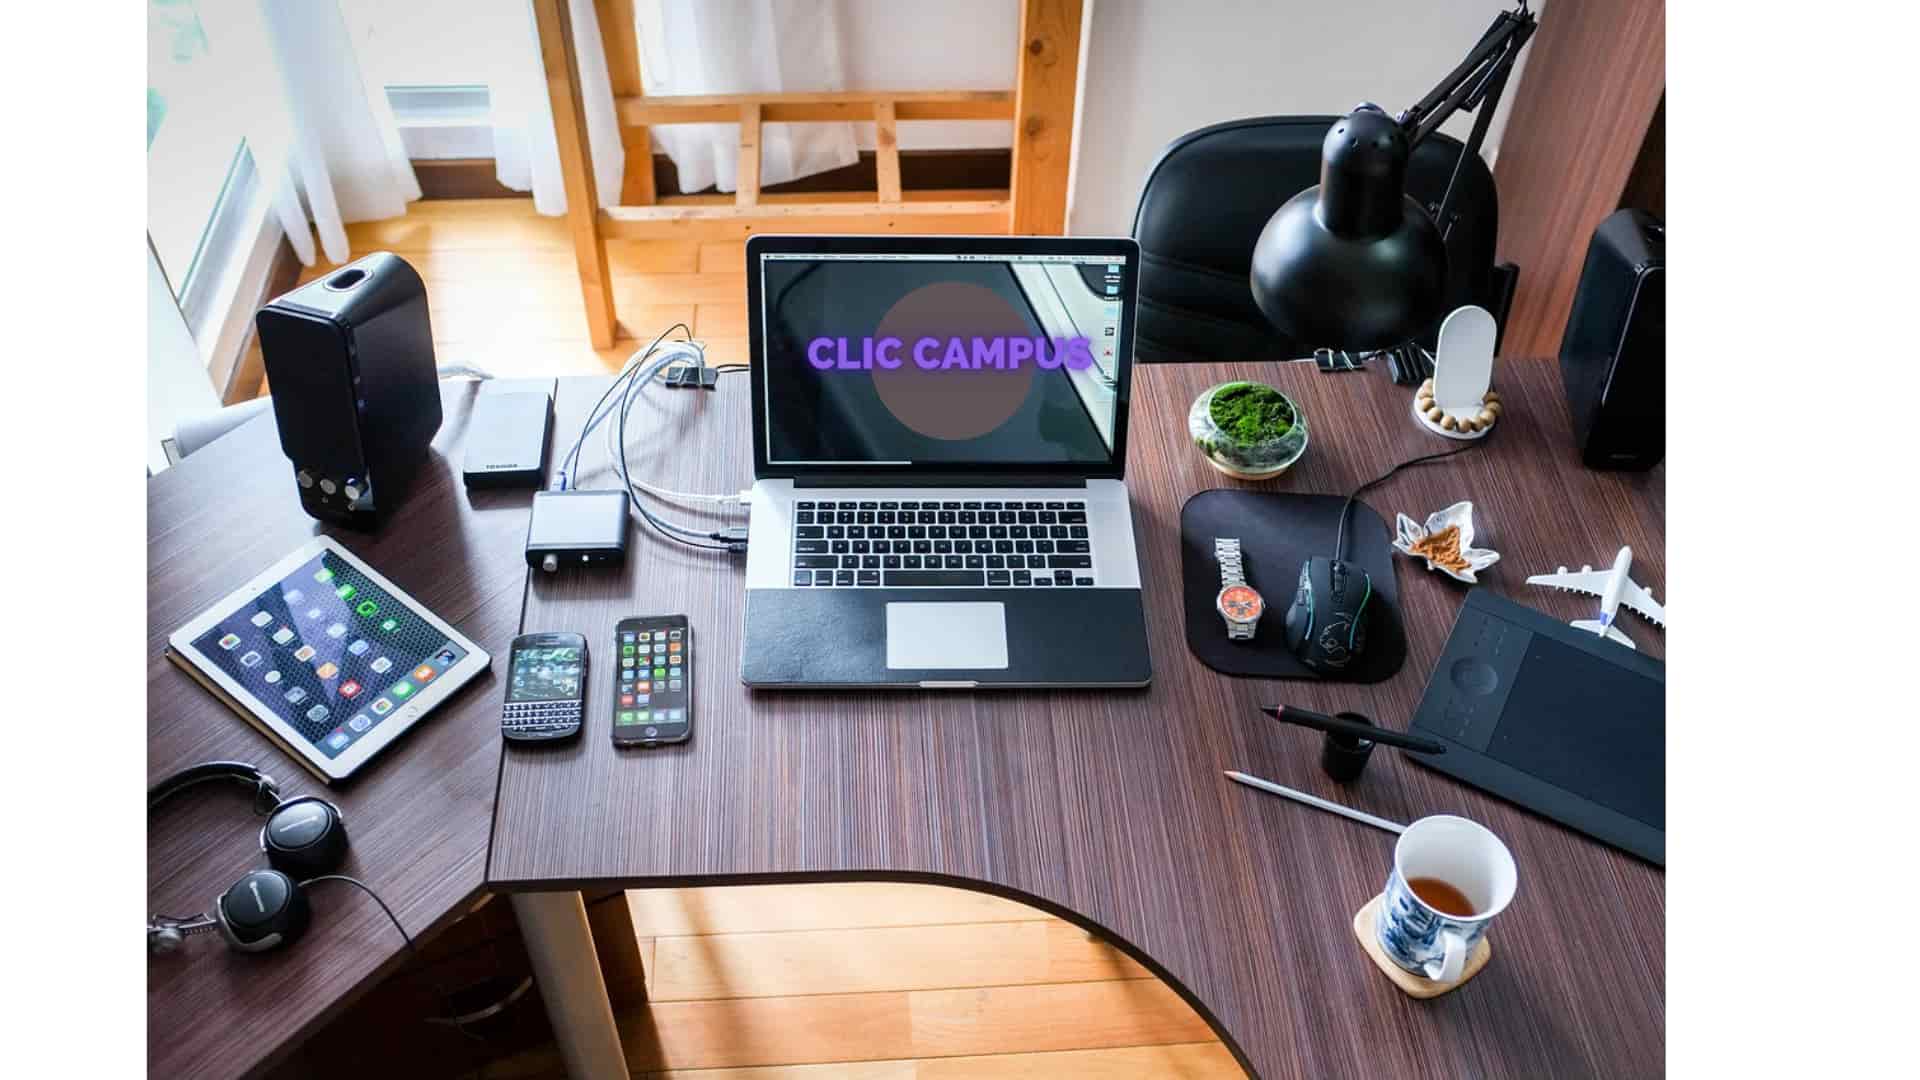 Une formation à domicile gratuite avec Clic Campus